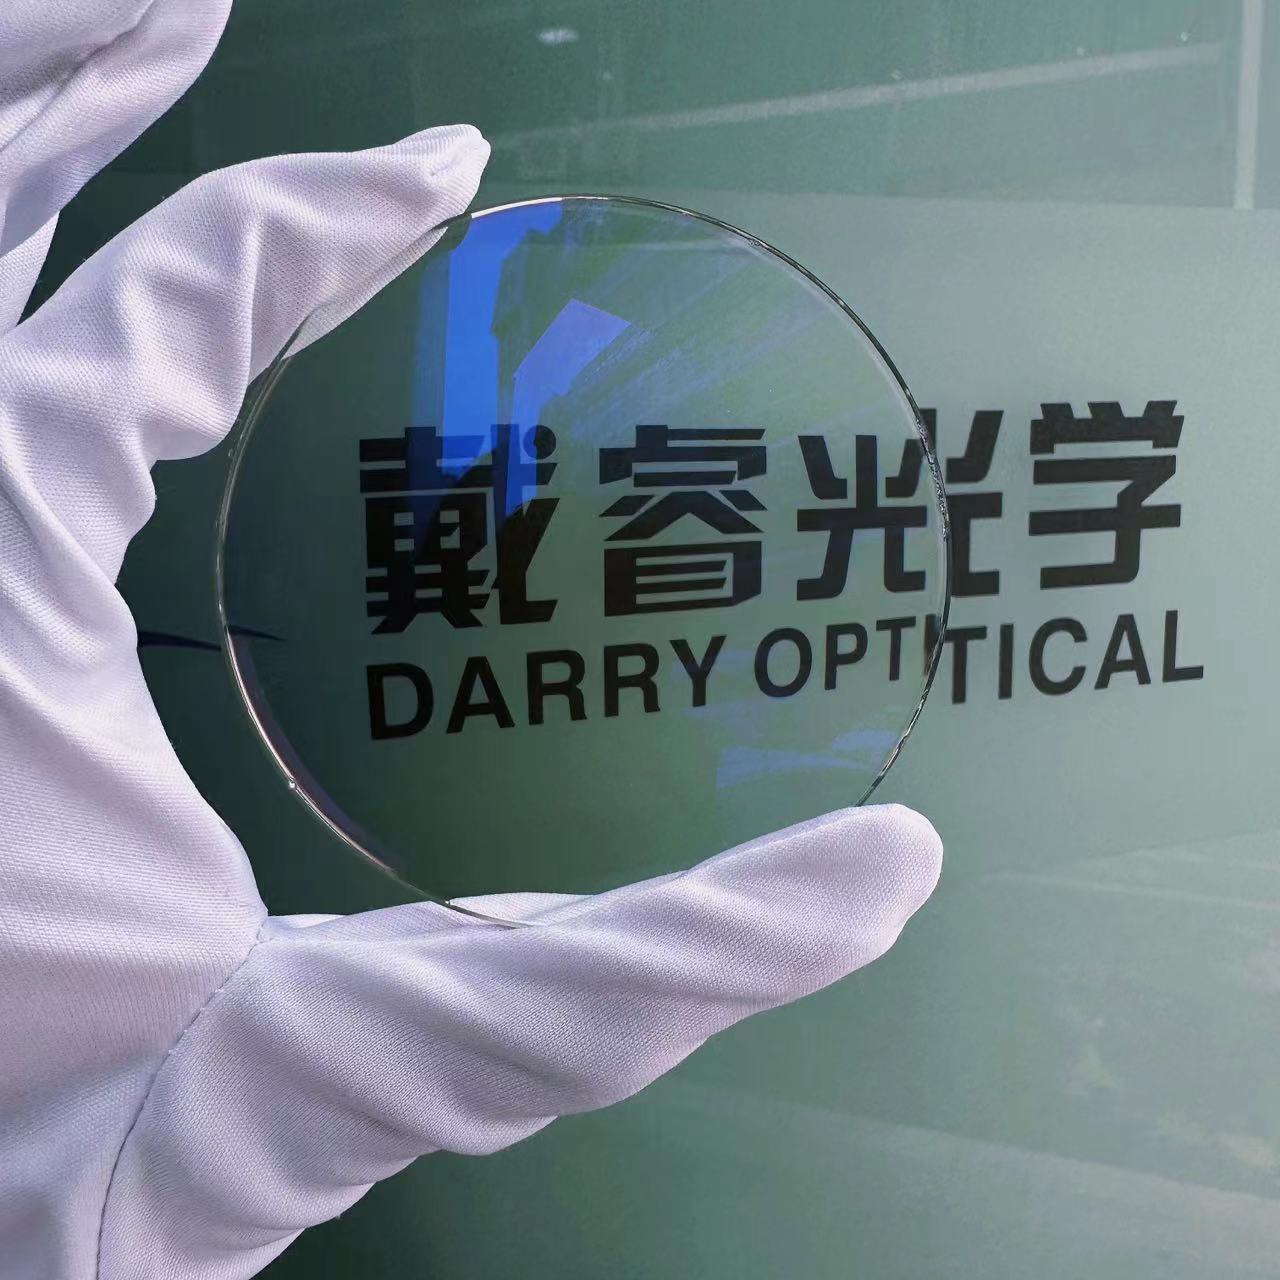 1.56 Fabricantes de Lentes de revestimiento azul HMC de corte azul de China | óptico darry